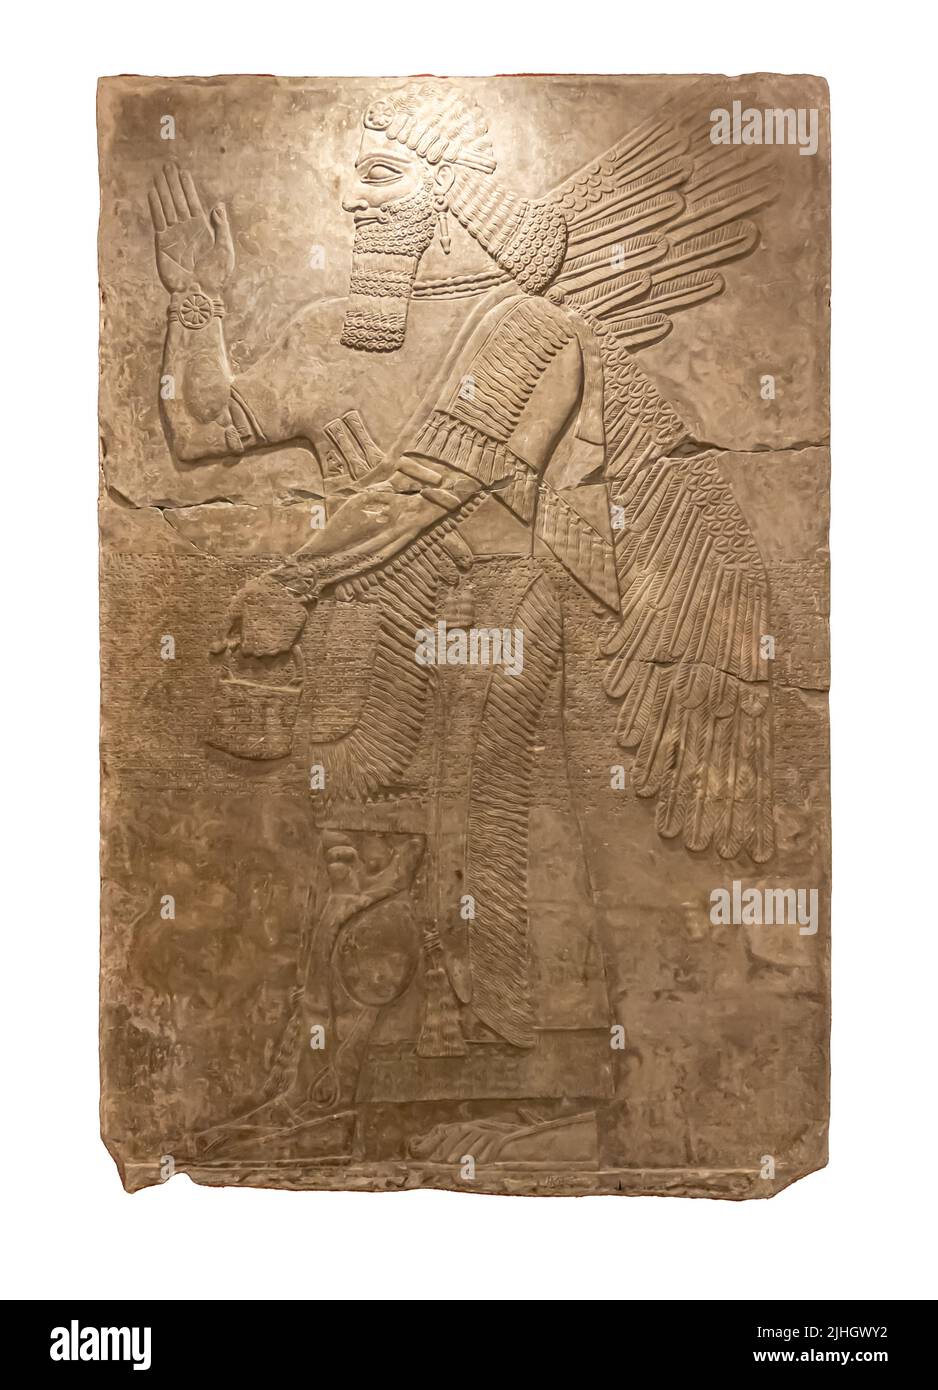 Geflügelte Gottheit. Relief aus dem Palast von Ashurnasirpal II in Kalhu, (Nimrud) - Kalkstein - IX Jahrhundert v. Chr. Hermitage Museum Stockfoto